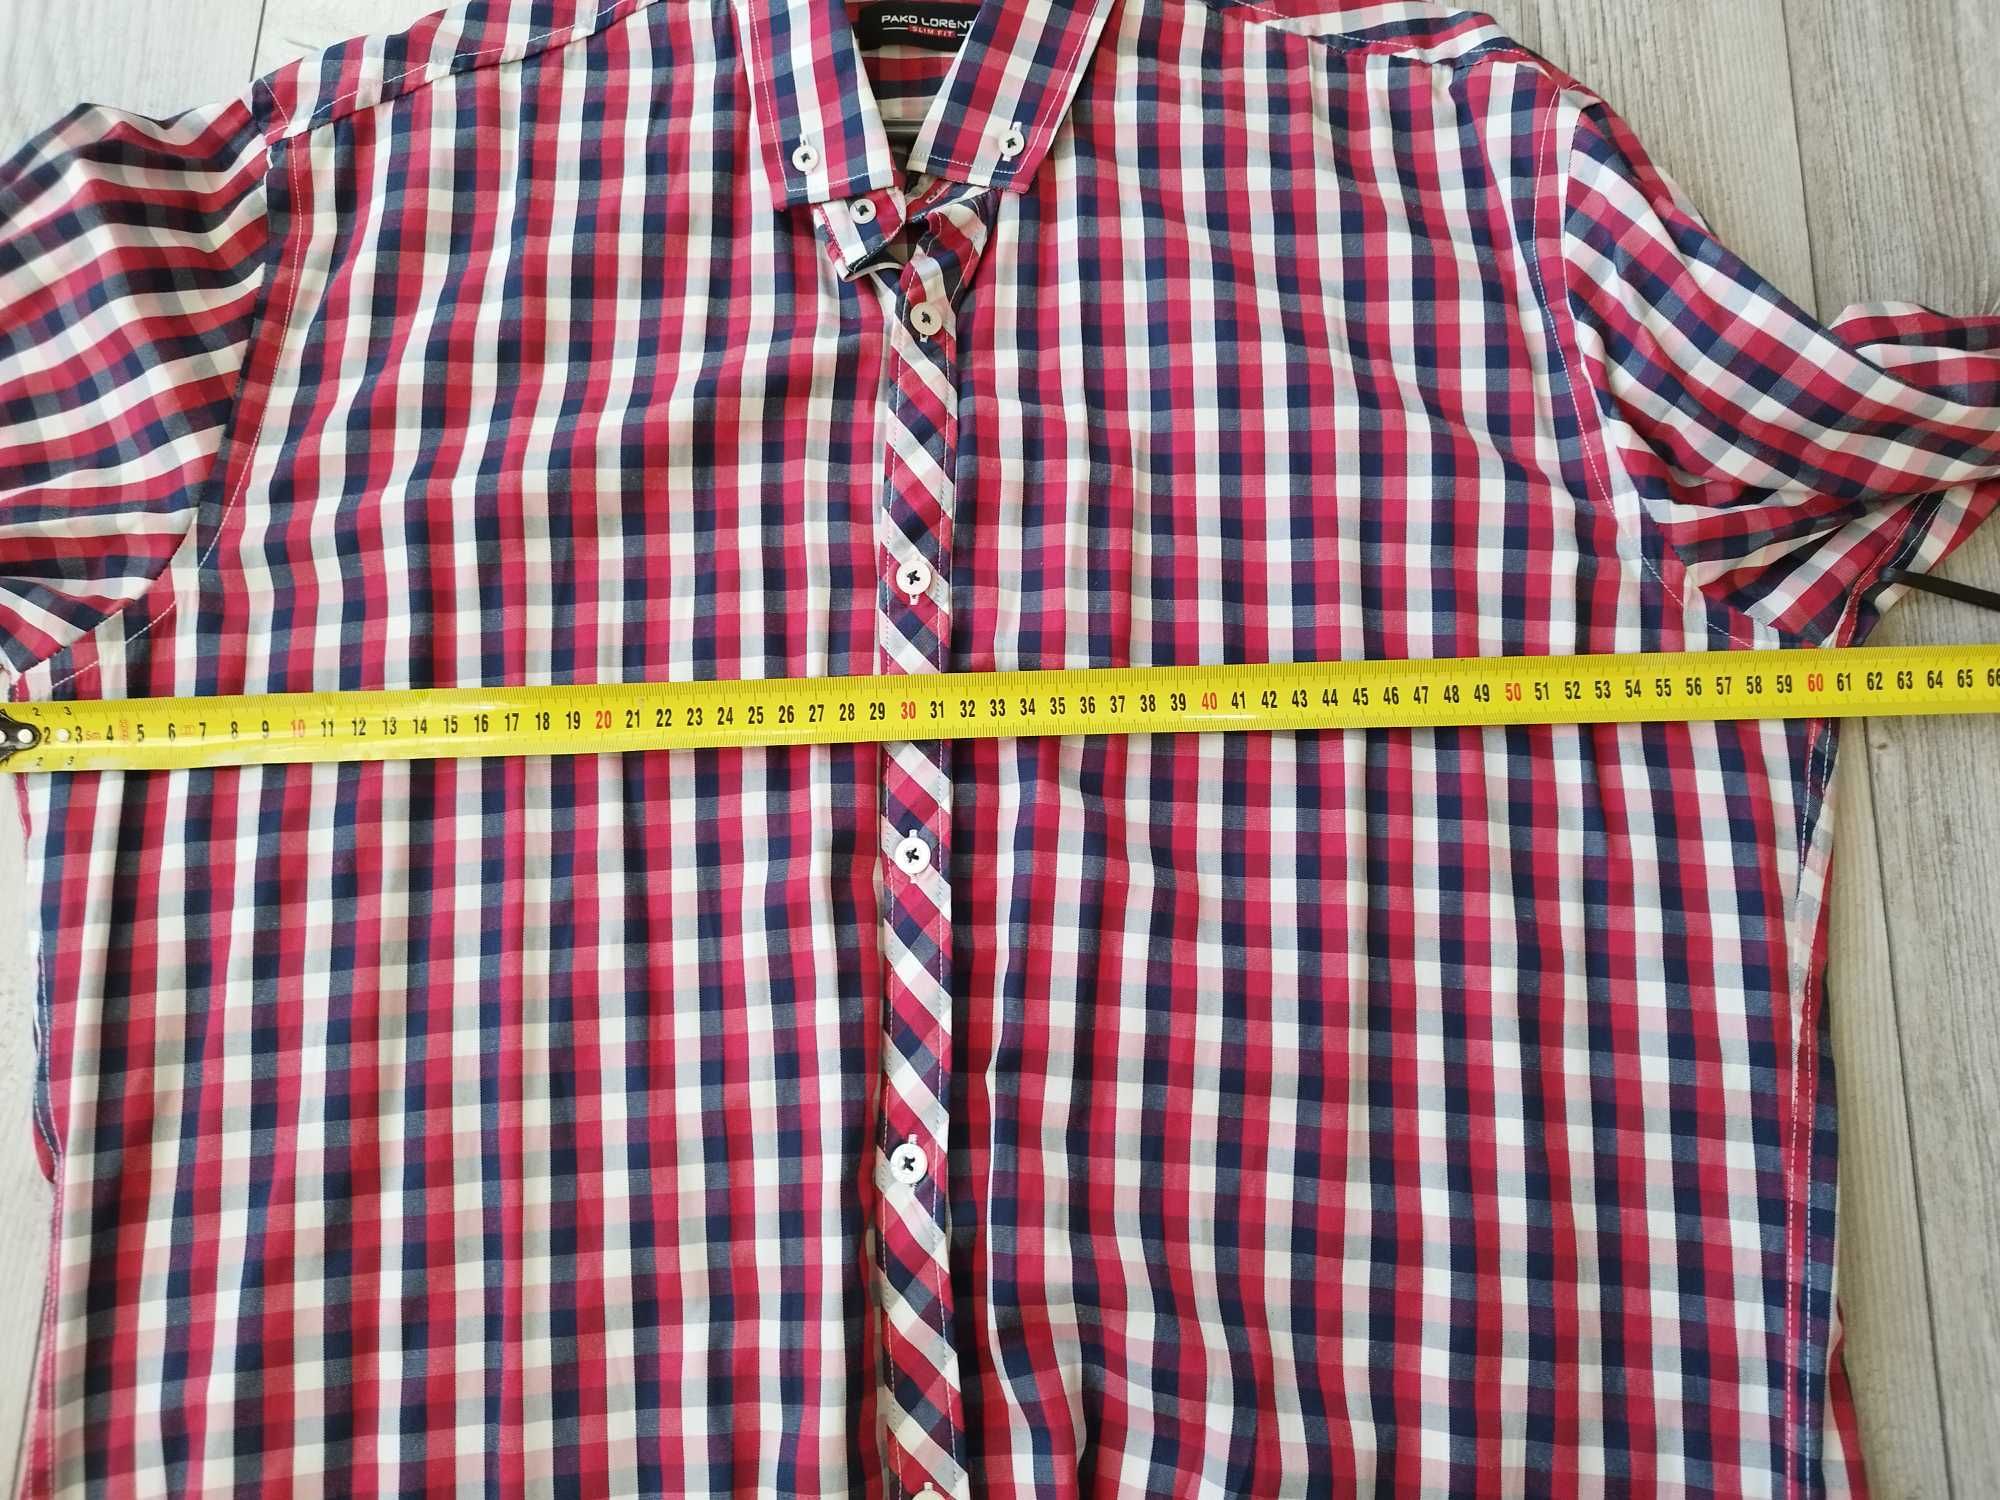 Koszula XL męska długi rękaw, bordowa,łaty, kratka,slim